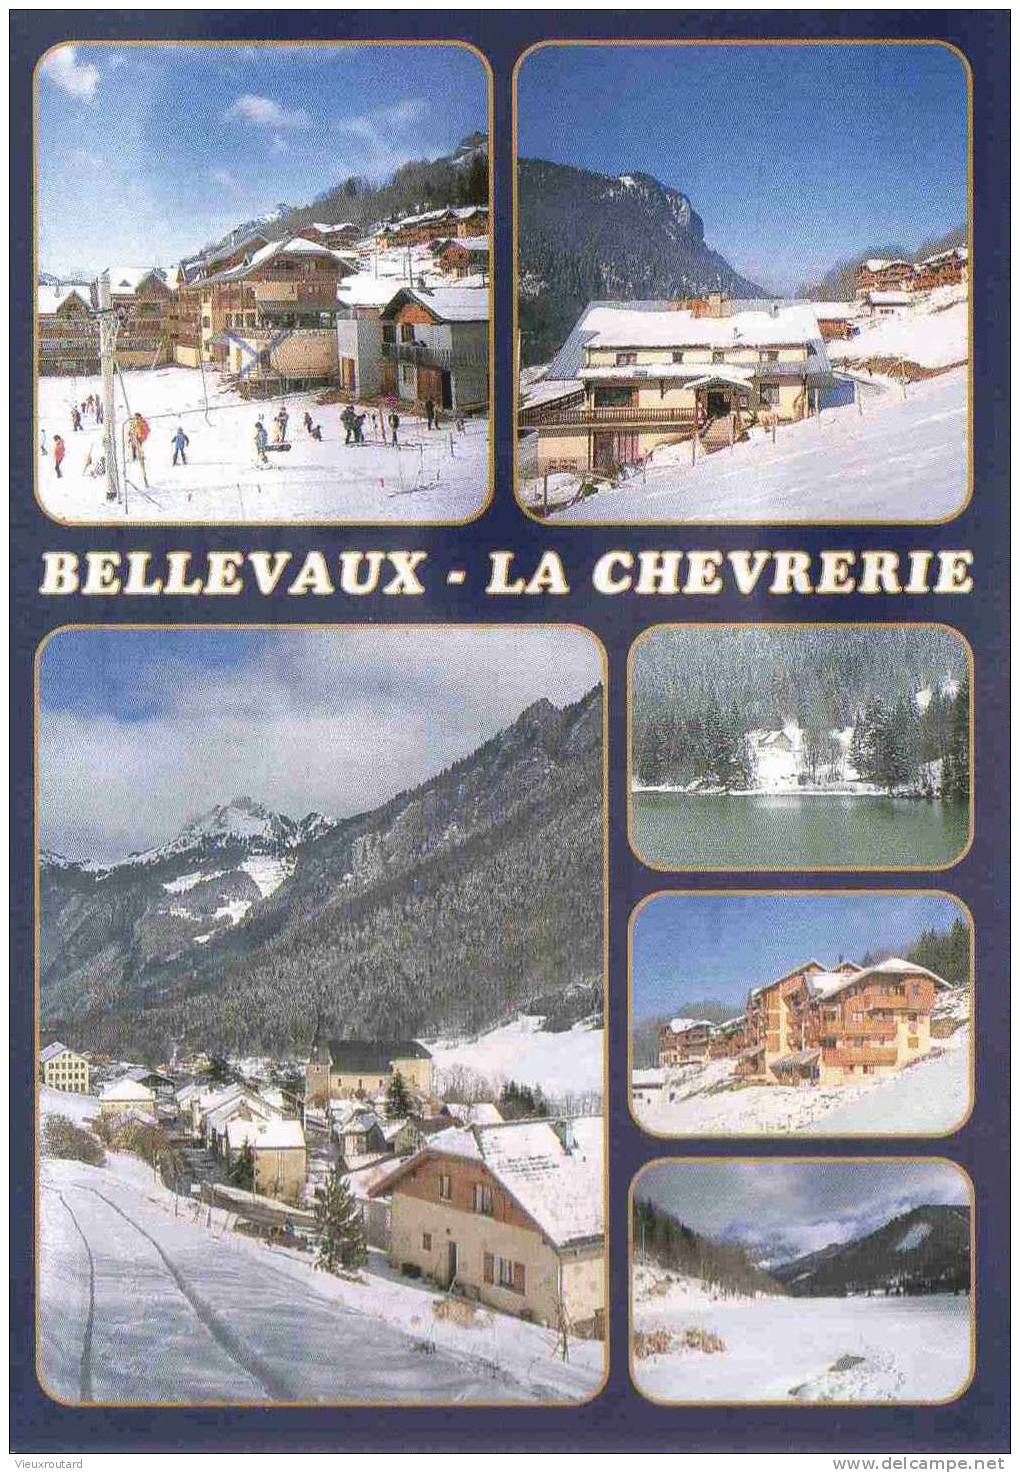 CPSM. BELLEVAUX LA CHEVRERIE. ALTITUDE 1100 METRES. DATEE 1999. - Bellevaux